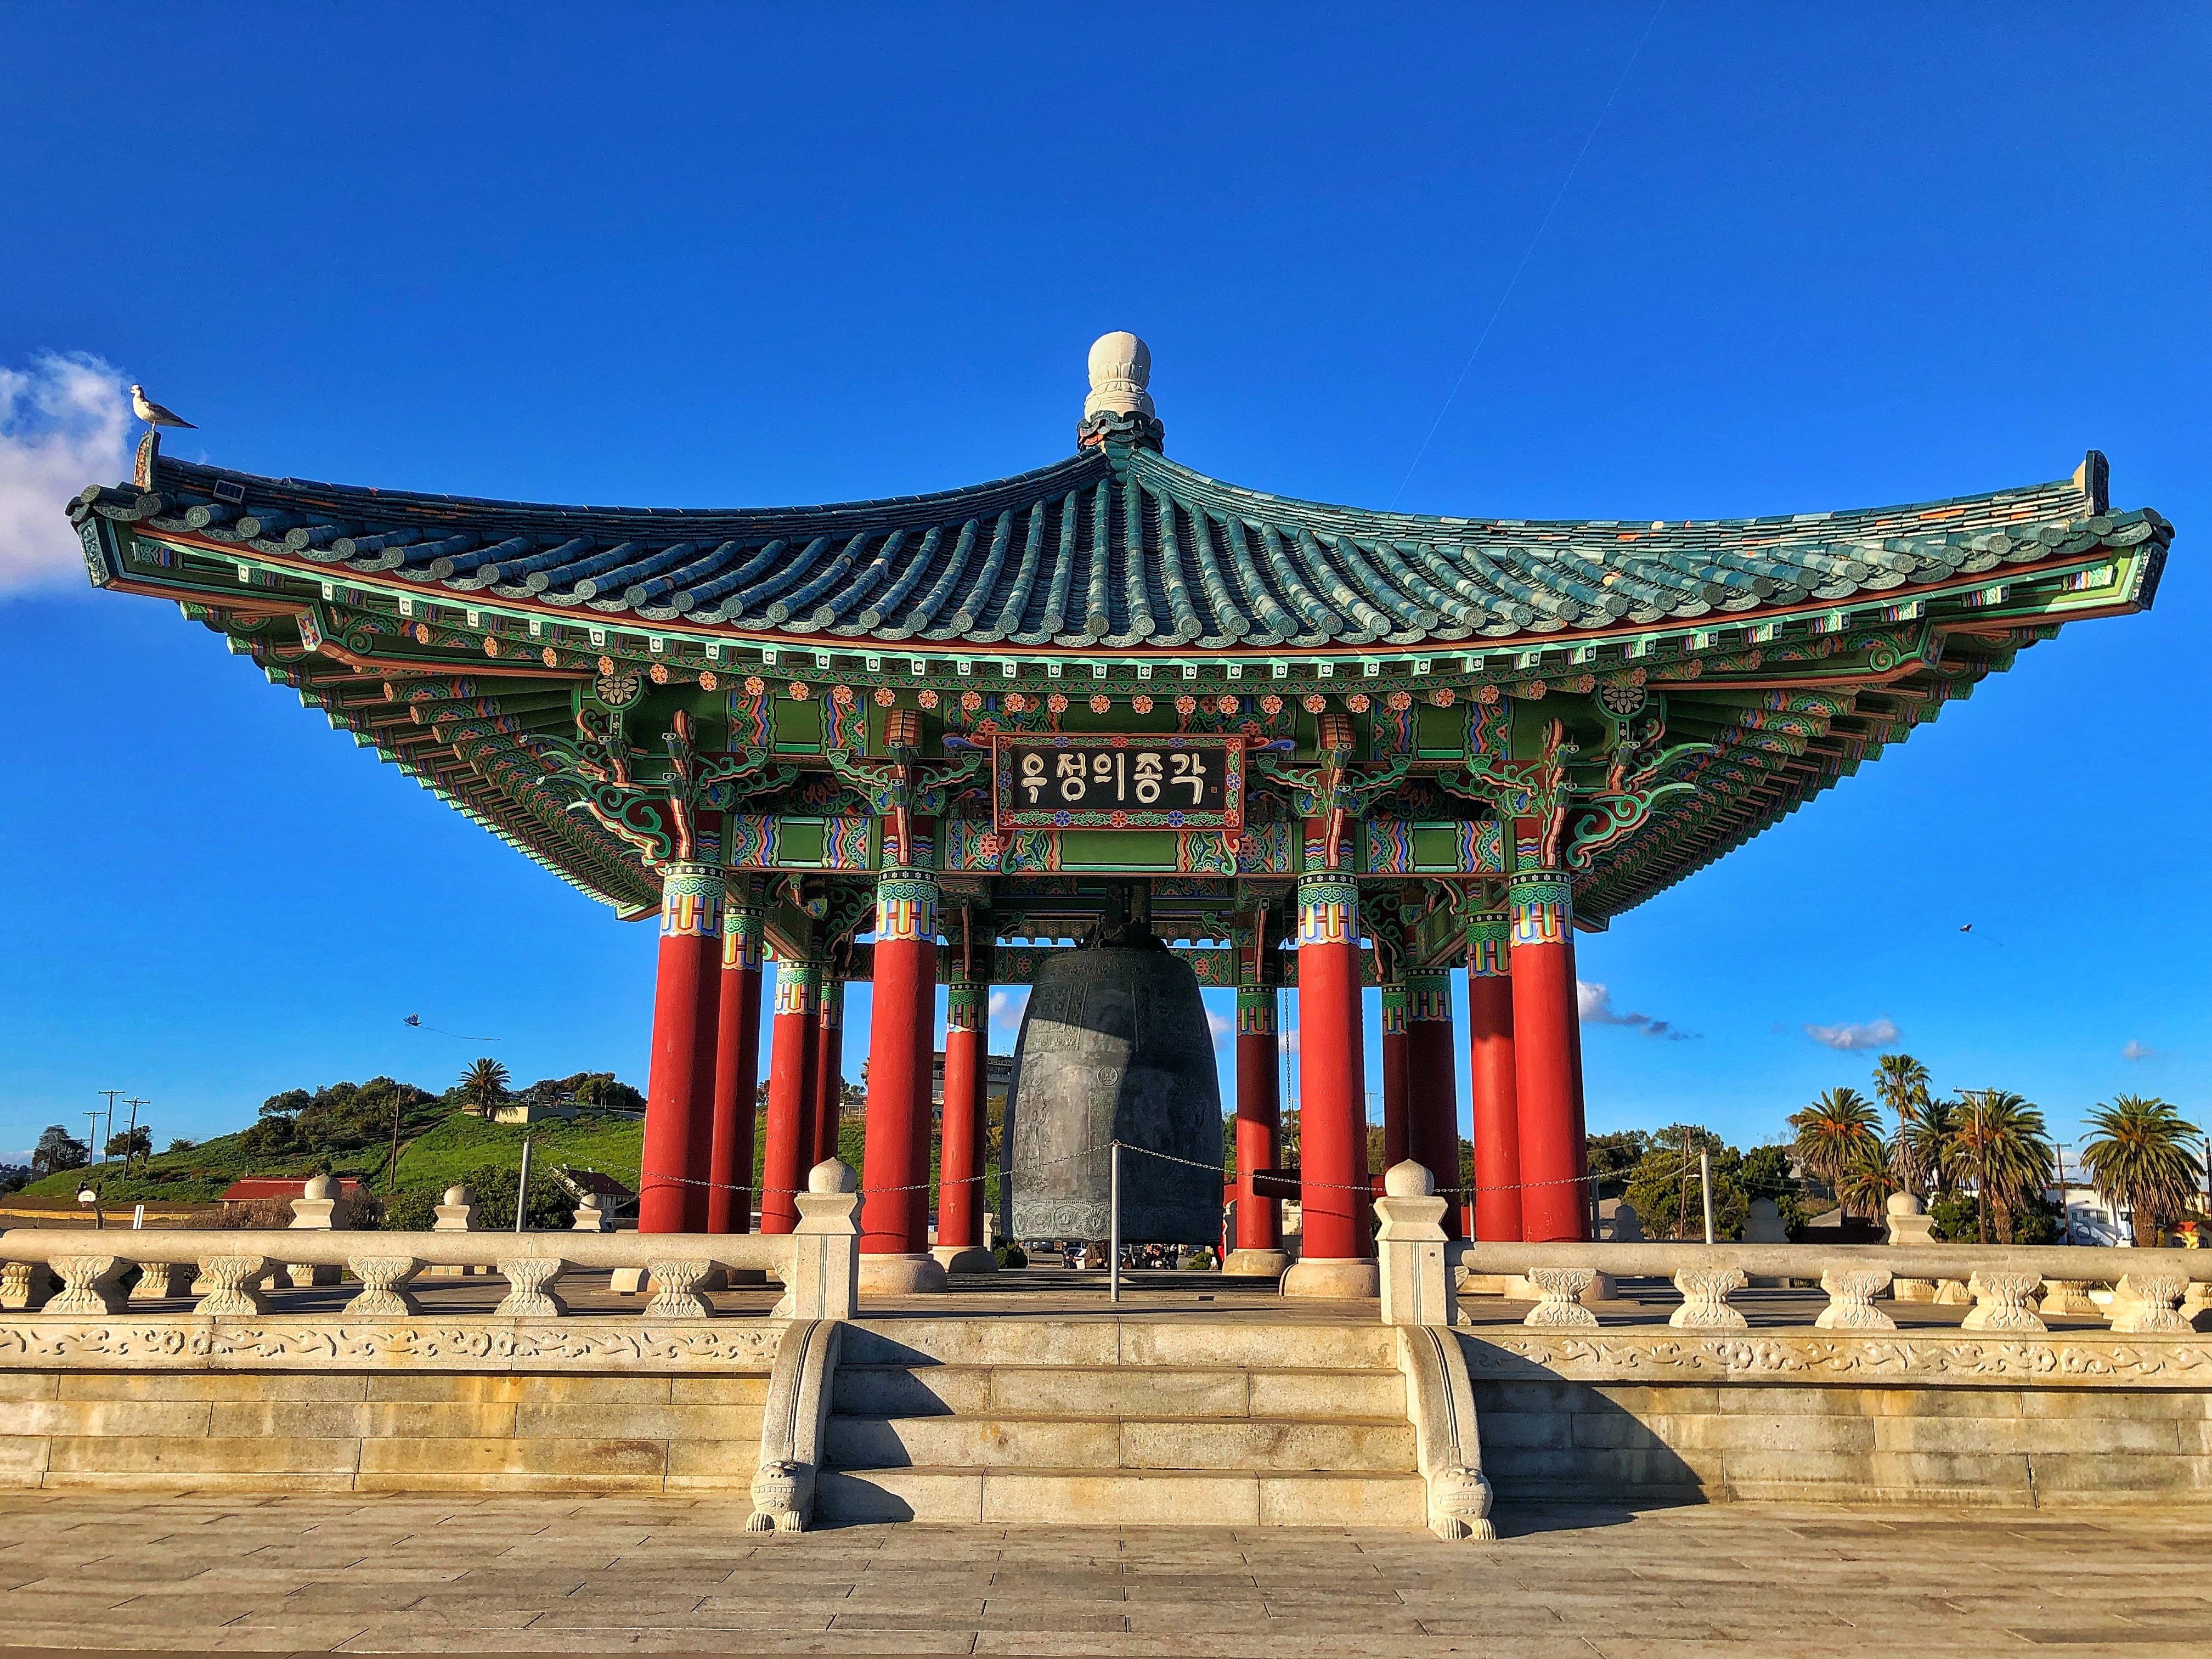  Korean Bell of Friendship in Stone Pavillion